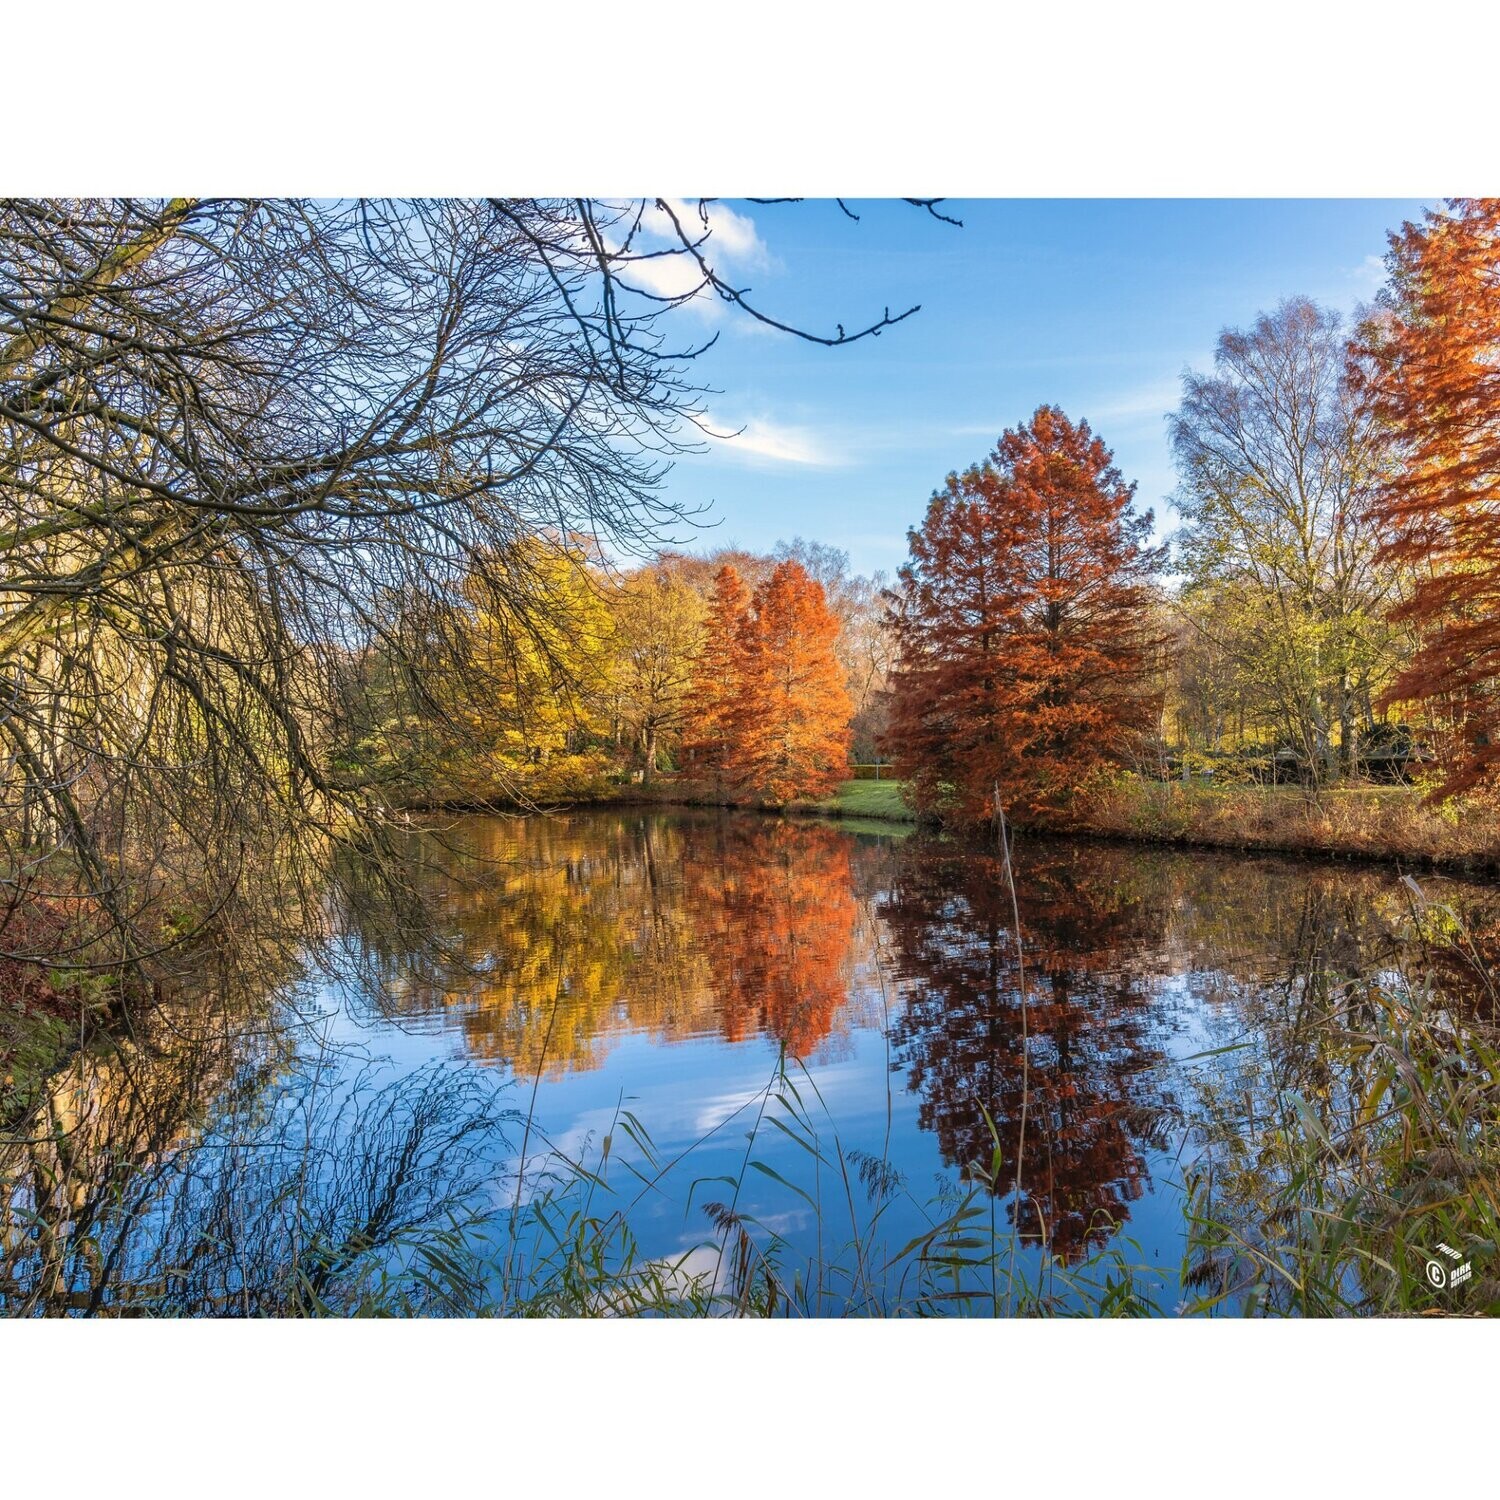 Hamburg Foto Datei - Stimmungsvoller Herbst in Hamburg, Abmessung nach Wunsch, max. Höhe 141,11 cm x Breite 188,91, zum Selbstdruck, Lieferung per filesharing